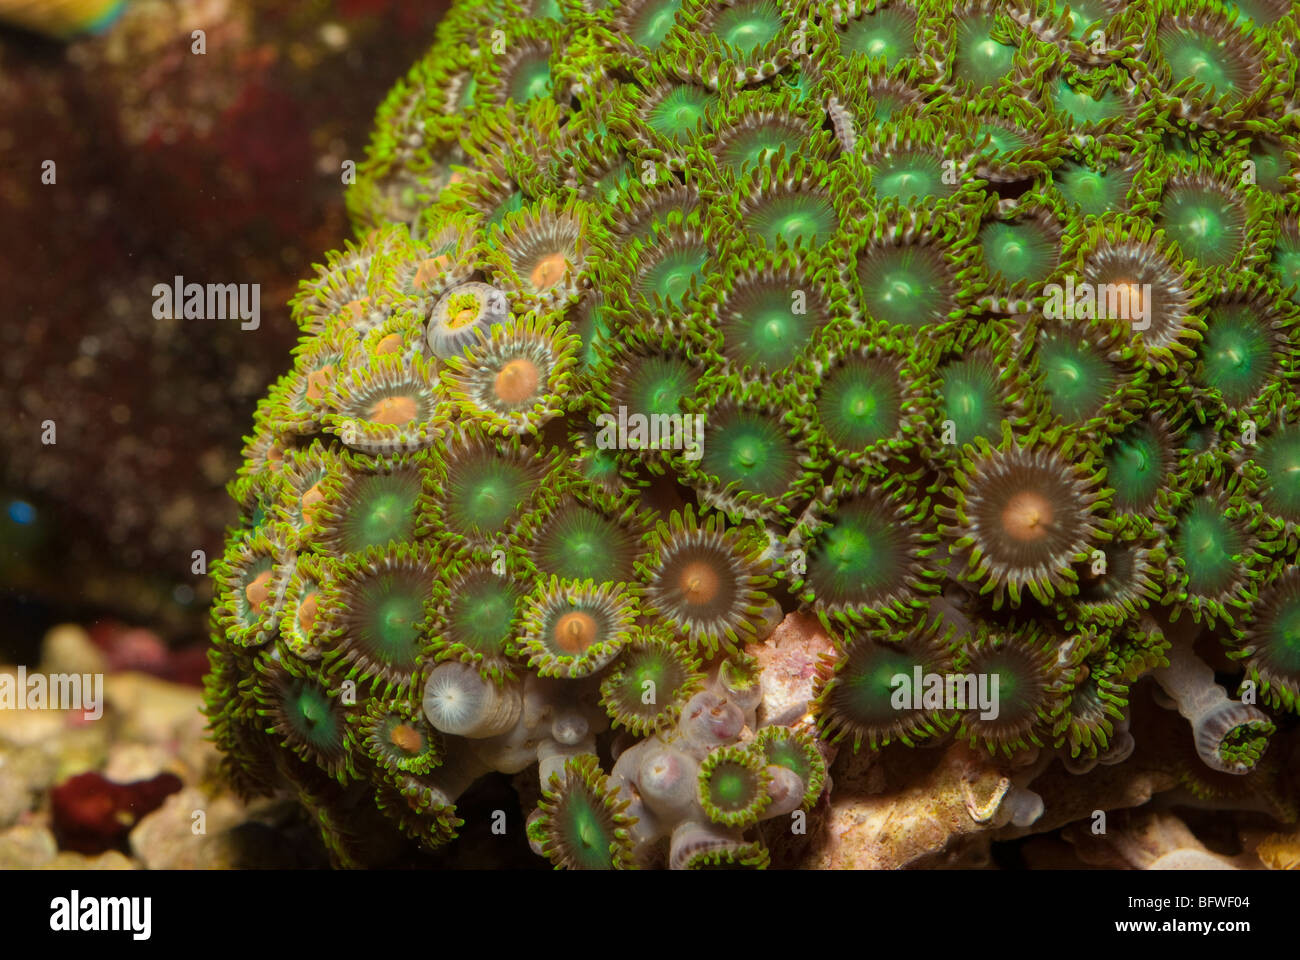 Button Polyp Corals Protopalythoa sp., Indo-pacific Ocean Stock Photo